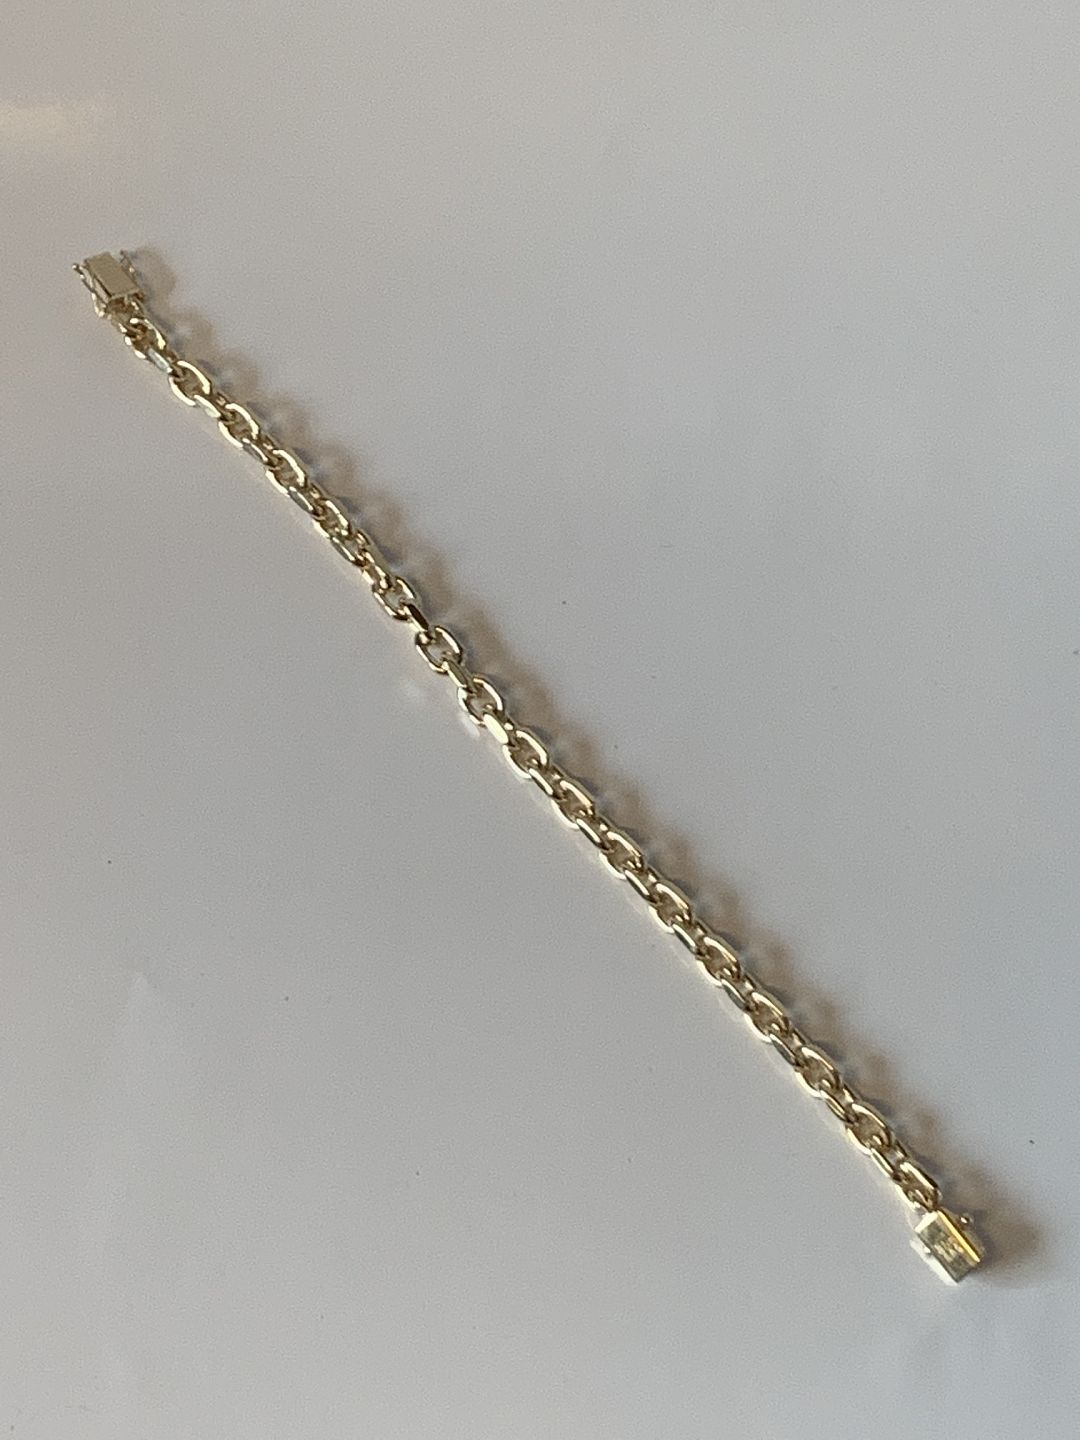 KAD ringen - Anker i 14 karat Guld * Stemplet BNH 585 * Længde 20,5 cm - Anker Armbånd i 14 karat Guld * Stemplet BNH * Længde 20,5 cm